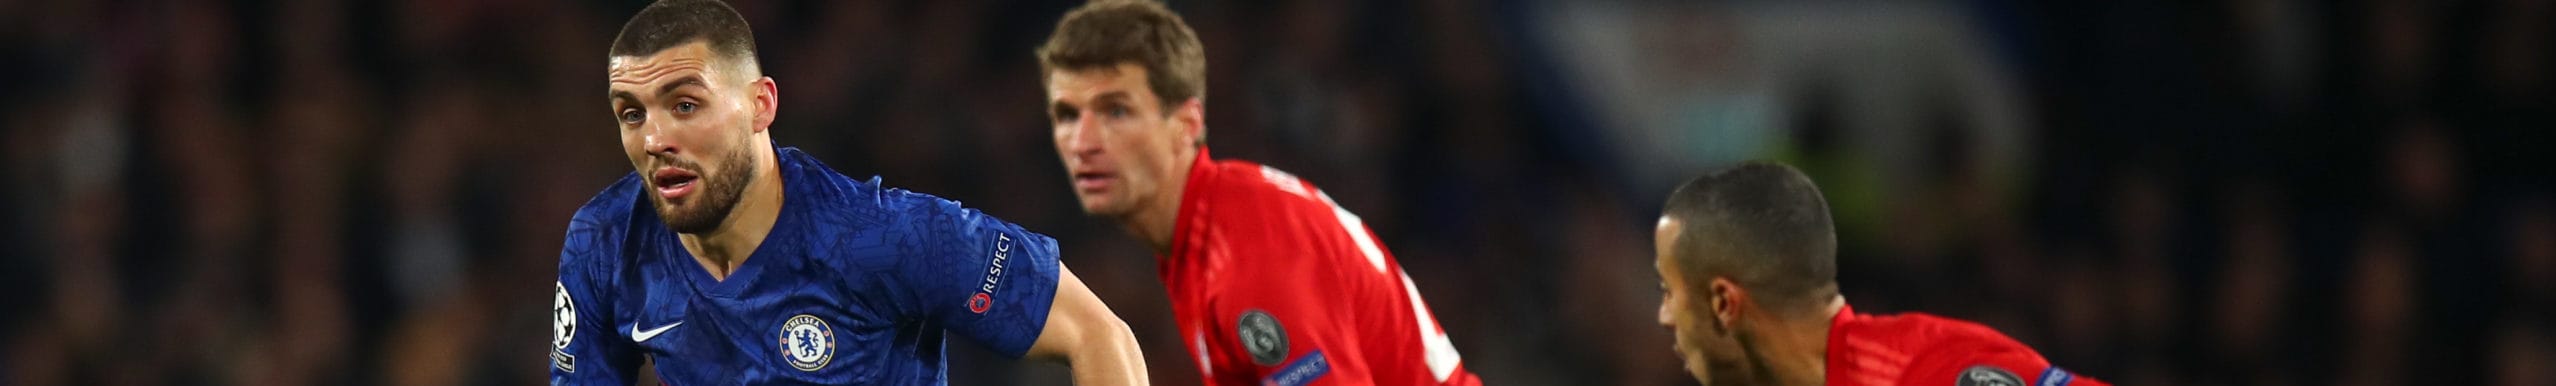 Bayern Monaco-Chelsea: per i bavaresi è poco più di una formalità